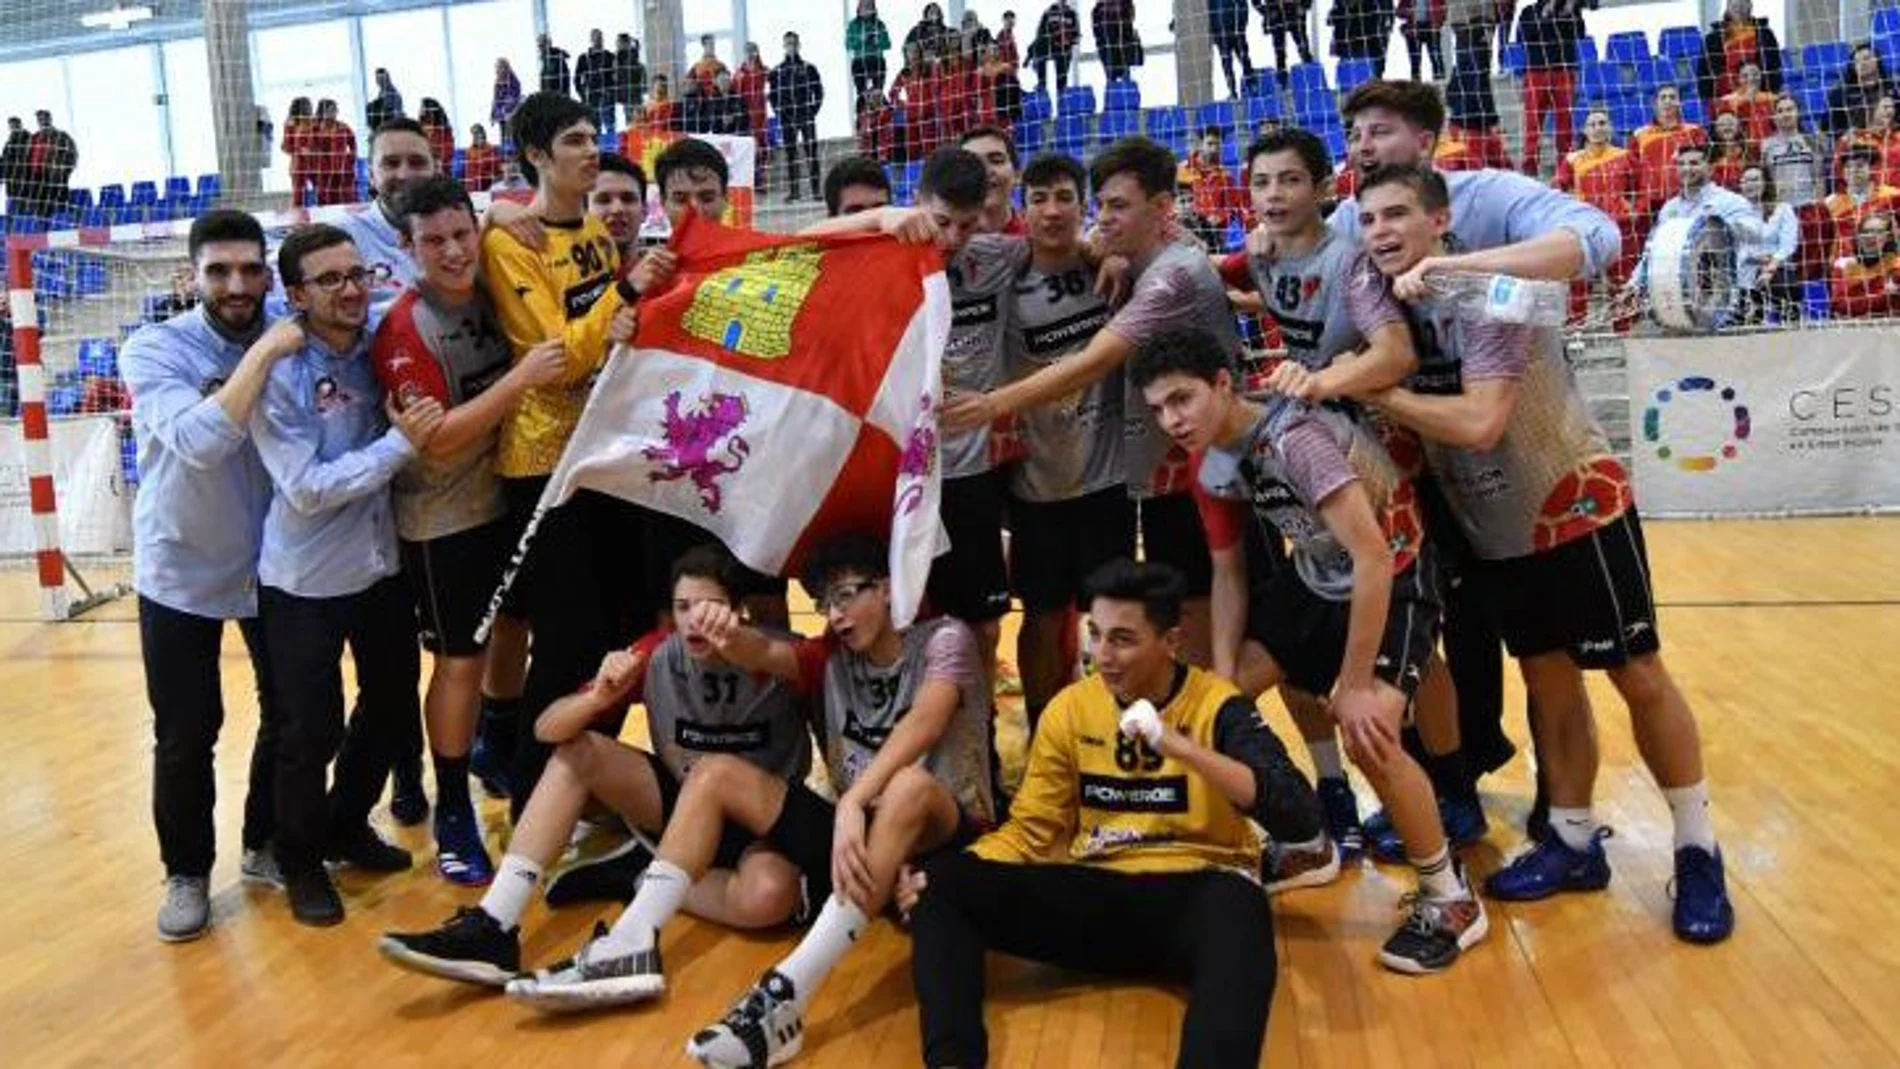 Los integrantes del equipo cadete campeón de España muestran su alegría al quedar campeones